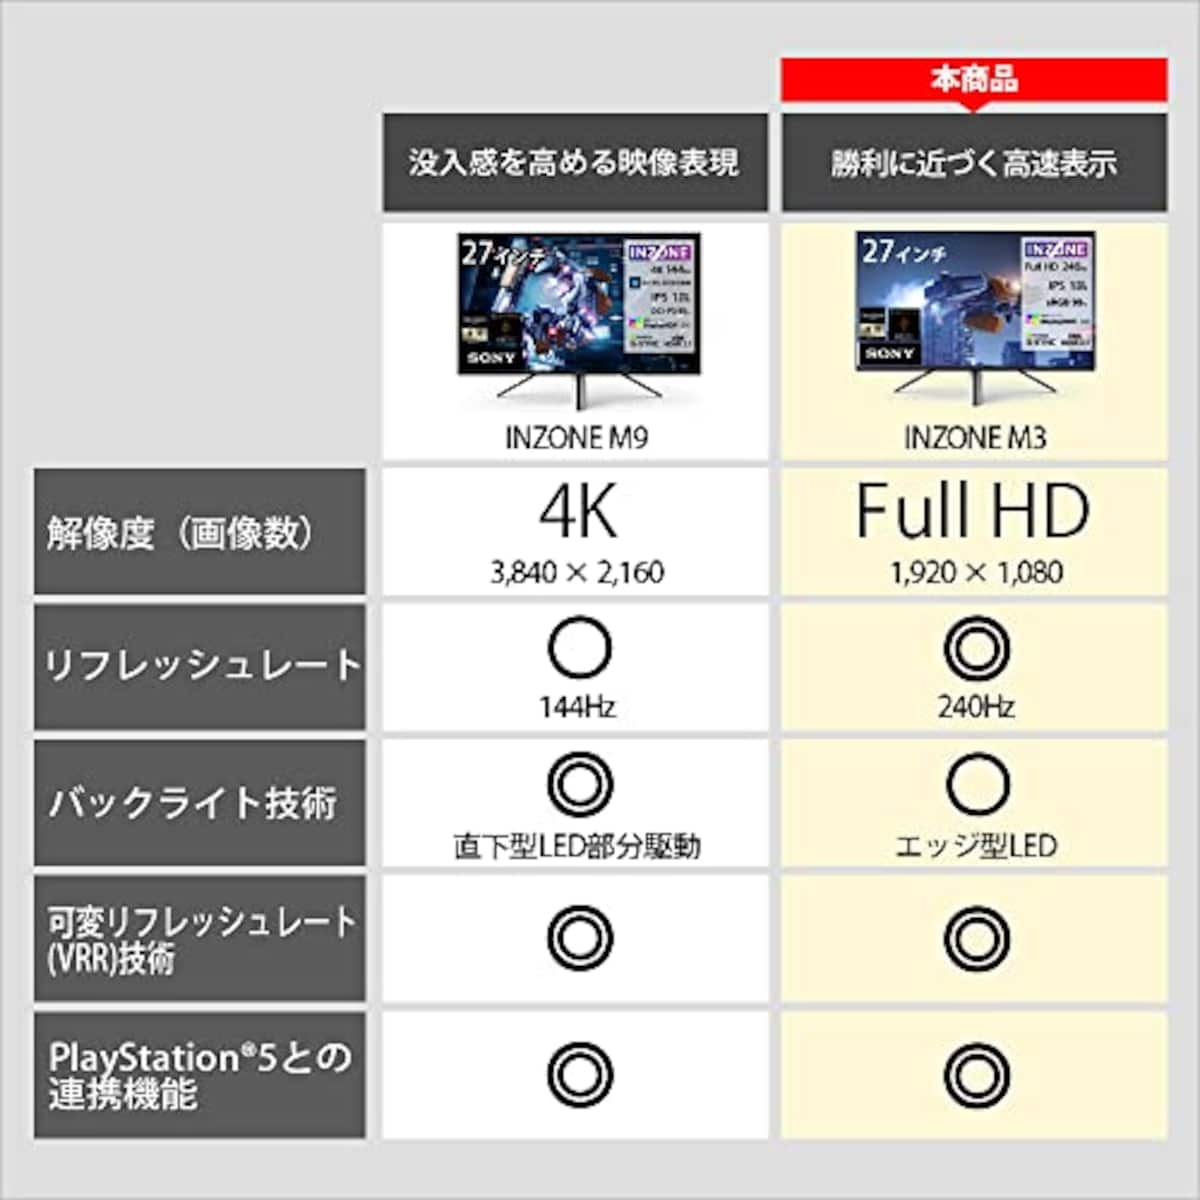  ソニー ゲーミングモニター INZONE M3 SDM-F27M30:2K 27インチ/リフレッシュレート240Hz/応答速度1ms GTG対応/チラつきやカクツキを軽減/sRGBカバー率99%/最大輝度400nit/PlayStation(R)5との連携/EVO Japan 2023公式競技ギア画像3 